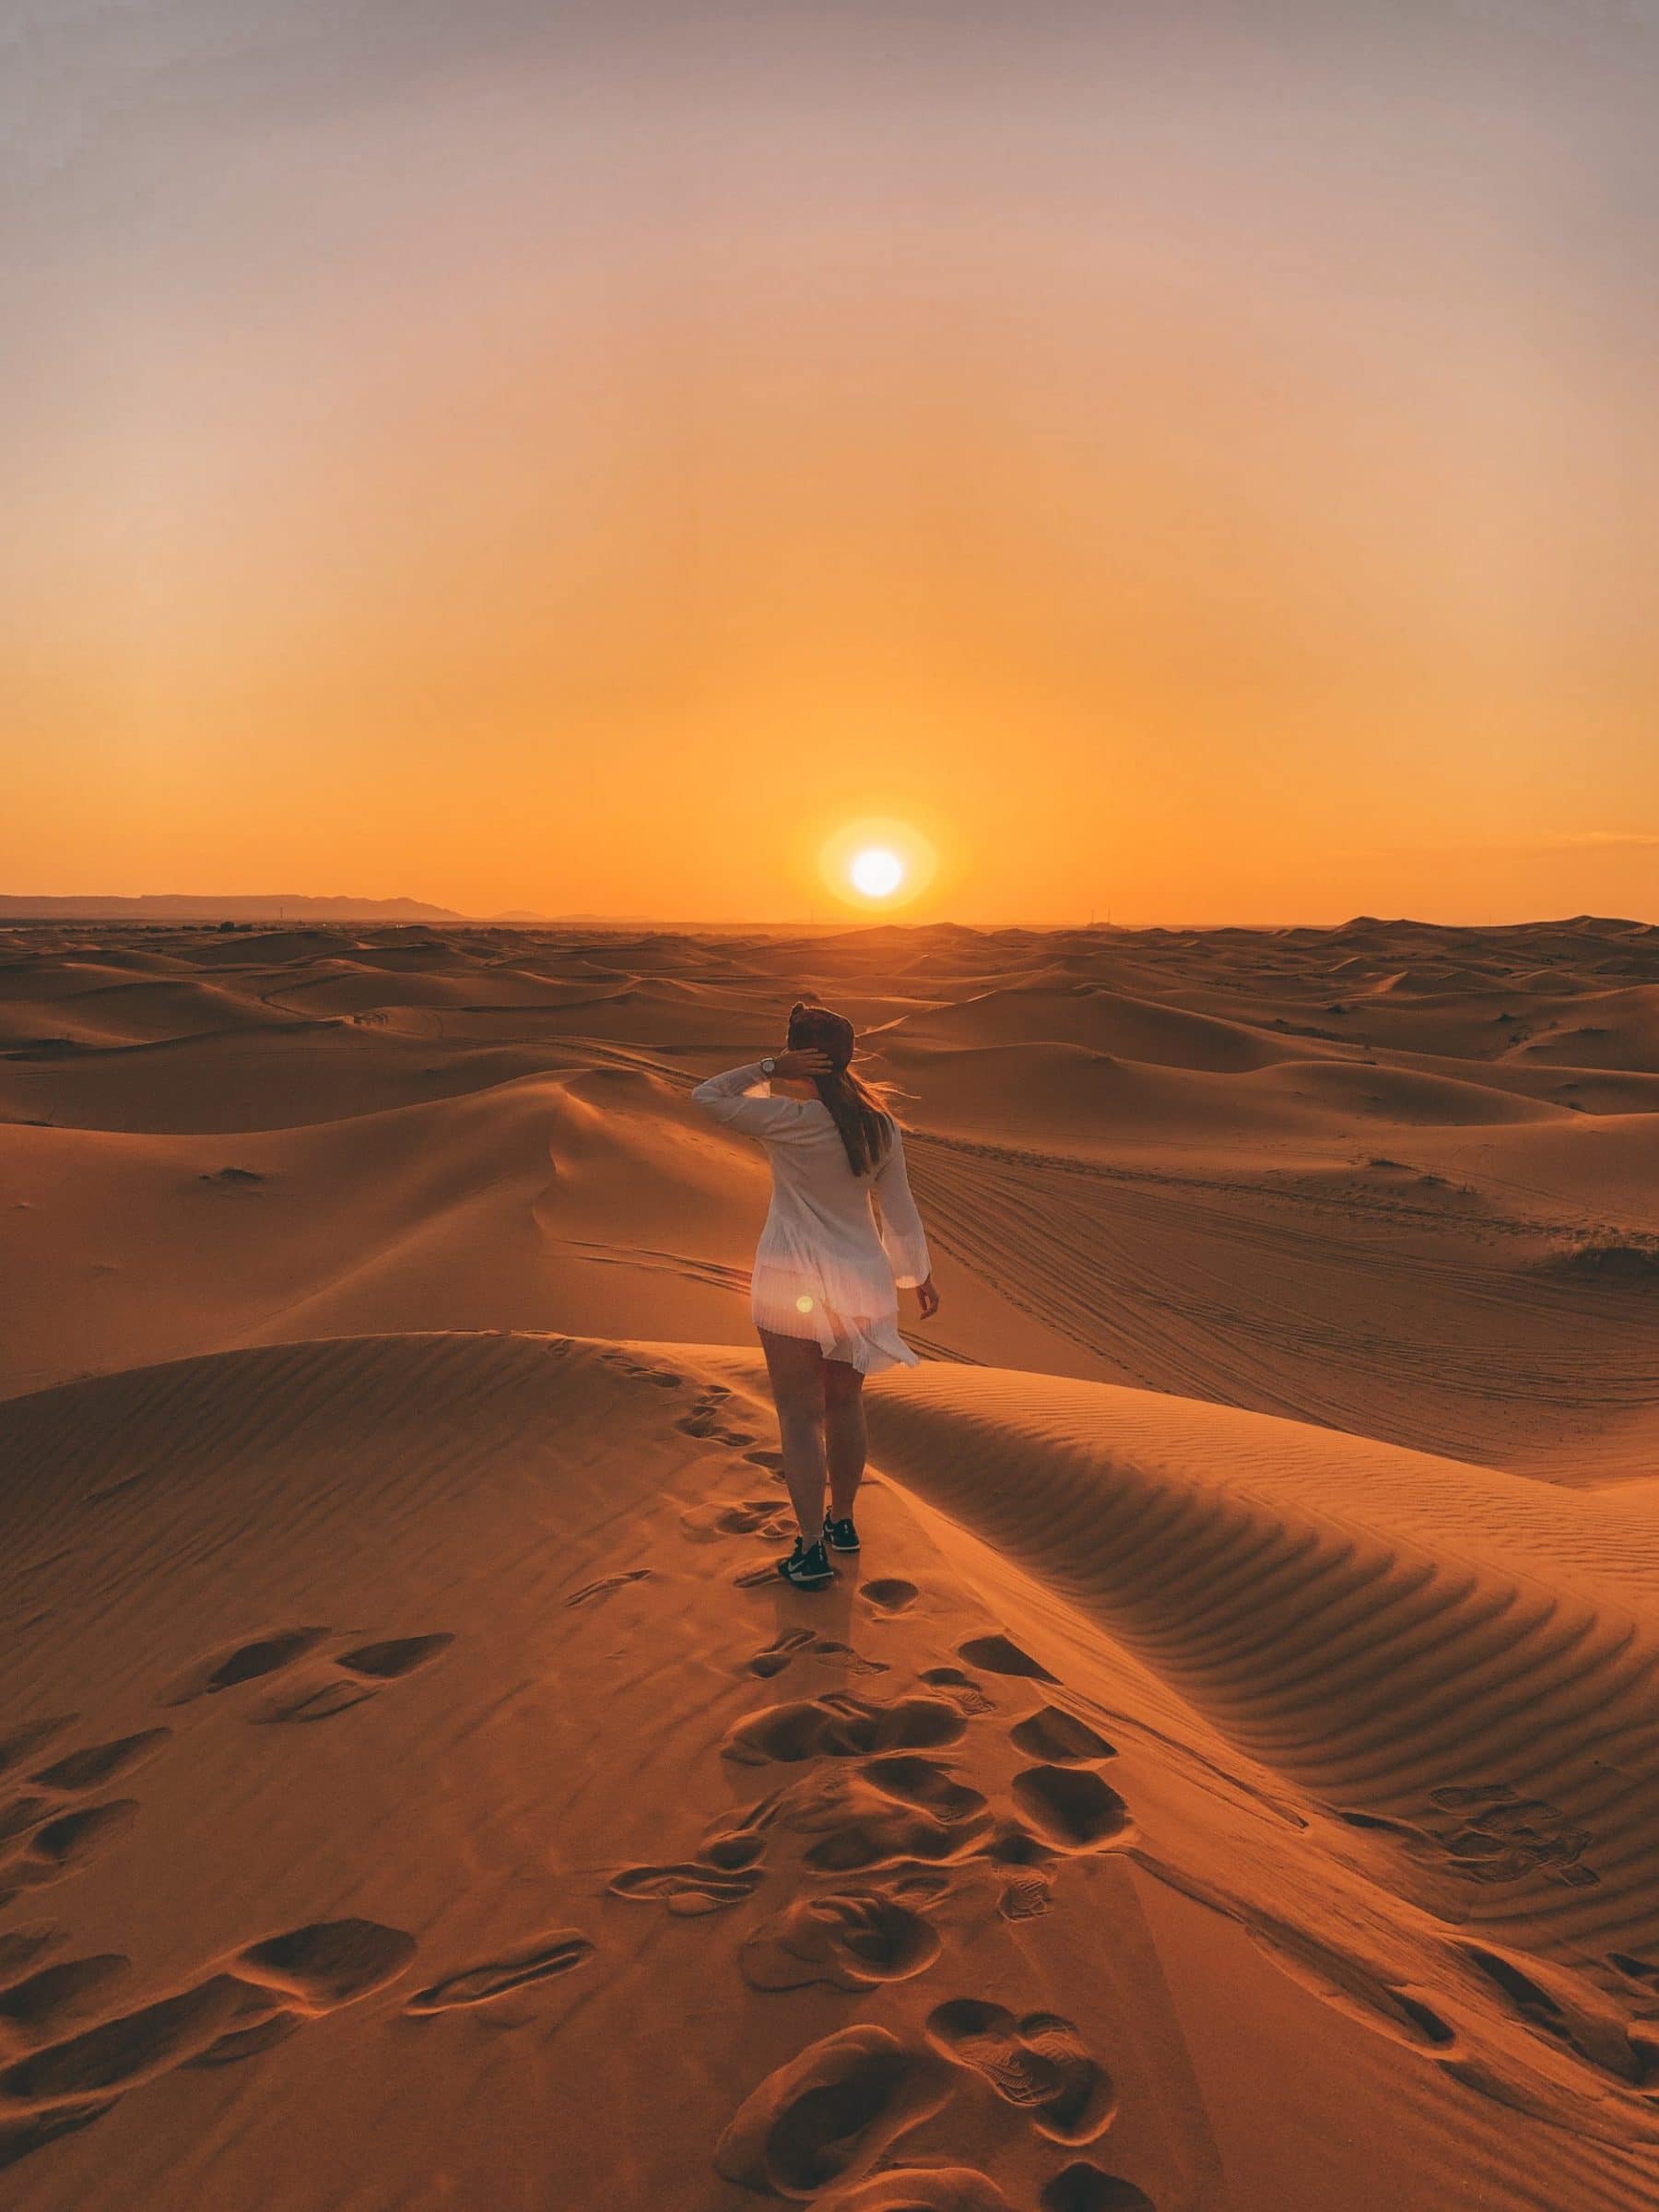 غروب الشمس في الصحراء الكبرى - المغرب